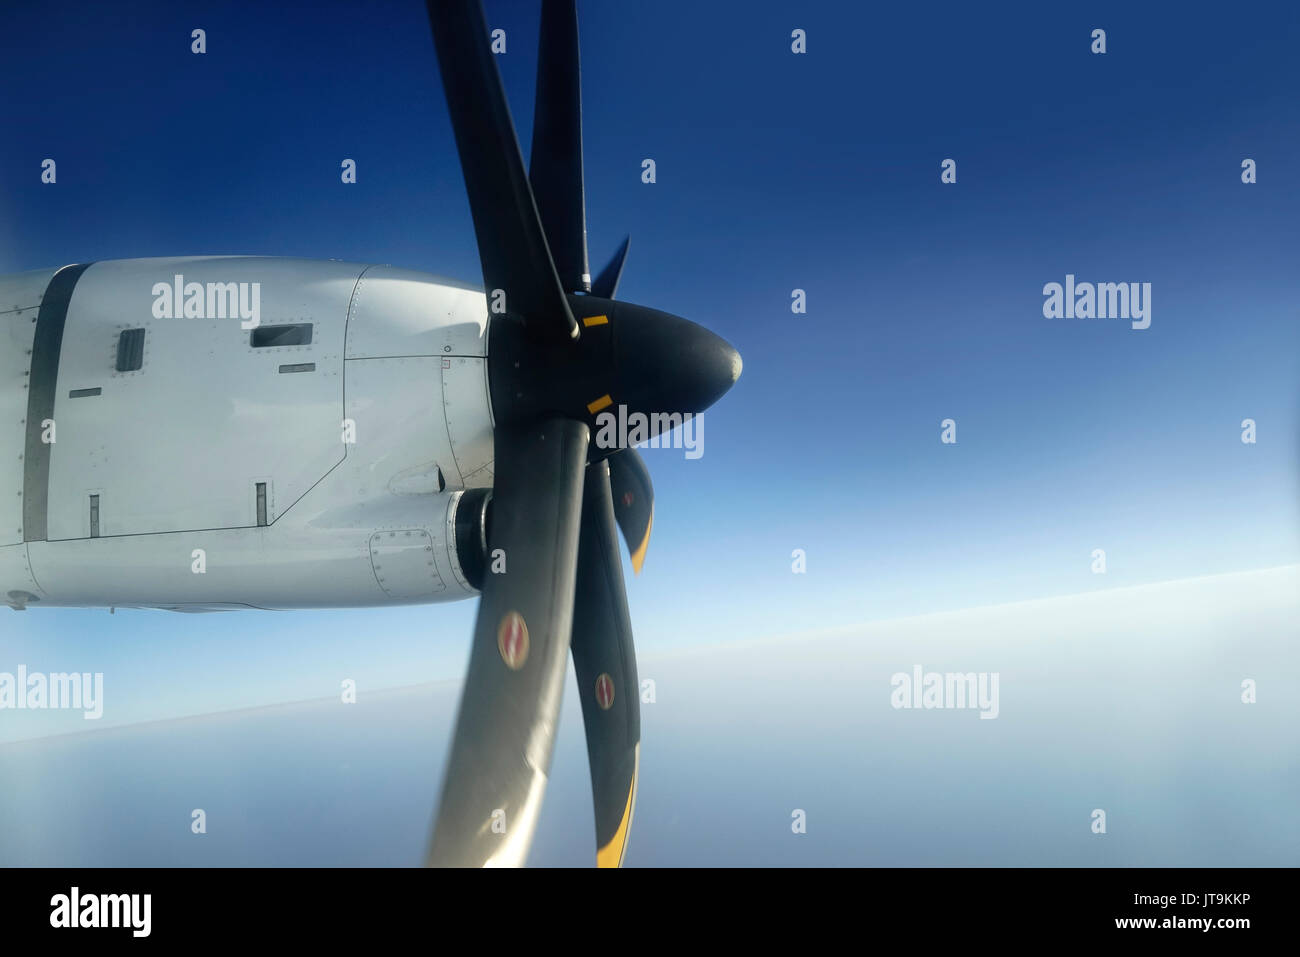 Außerhalb Aussicht vom Fenster Sitz des kleinen Flugzeug propeller Motor zu den Kotflügeln befestigt mit seinen schwarzen Klingen Drehen hoch in den blauen Himmel. Stockfoto